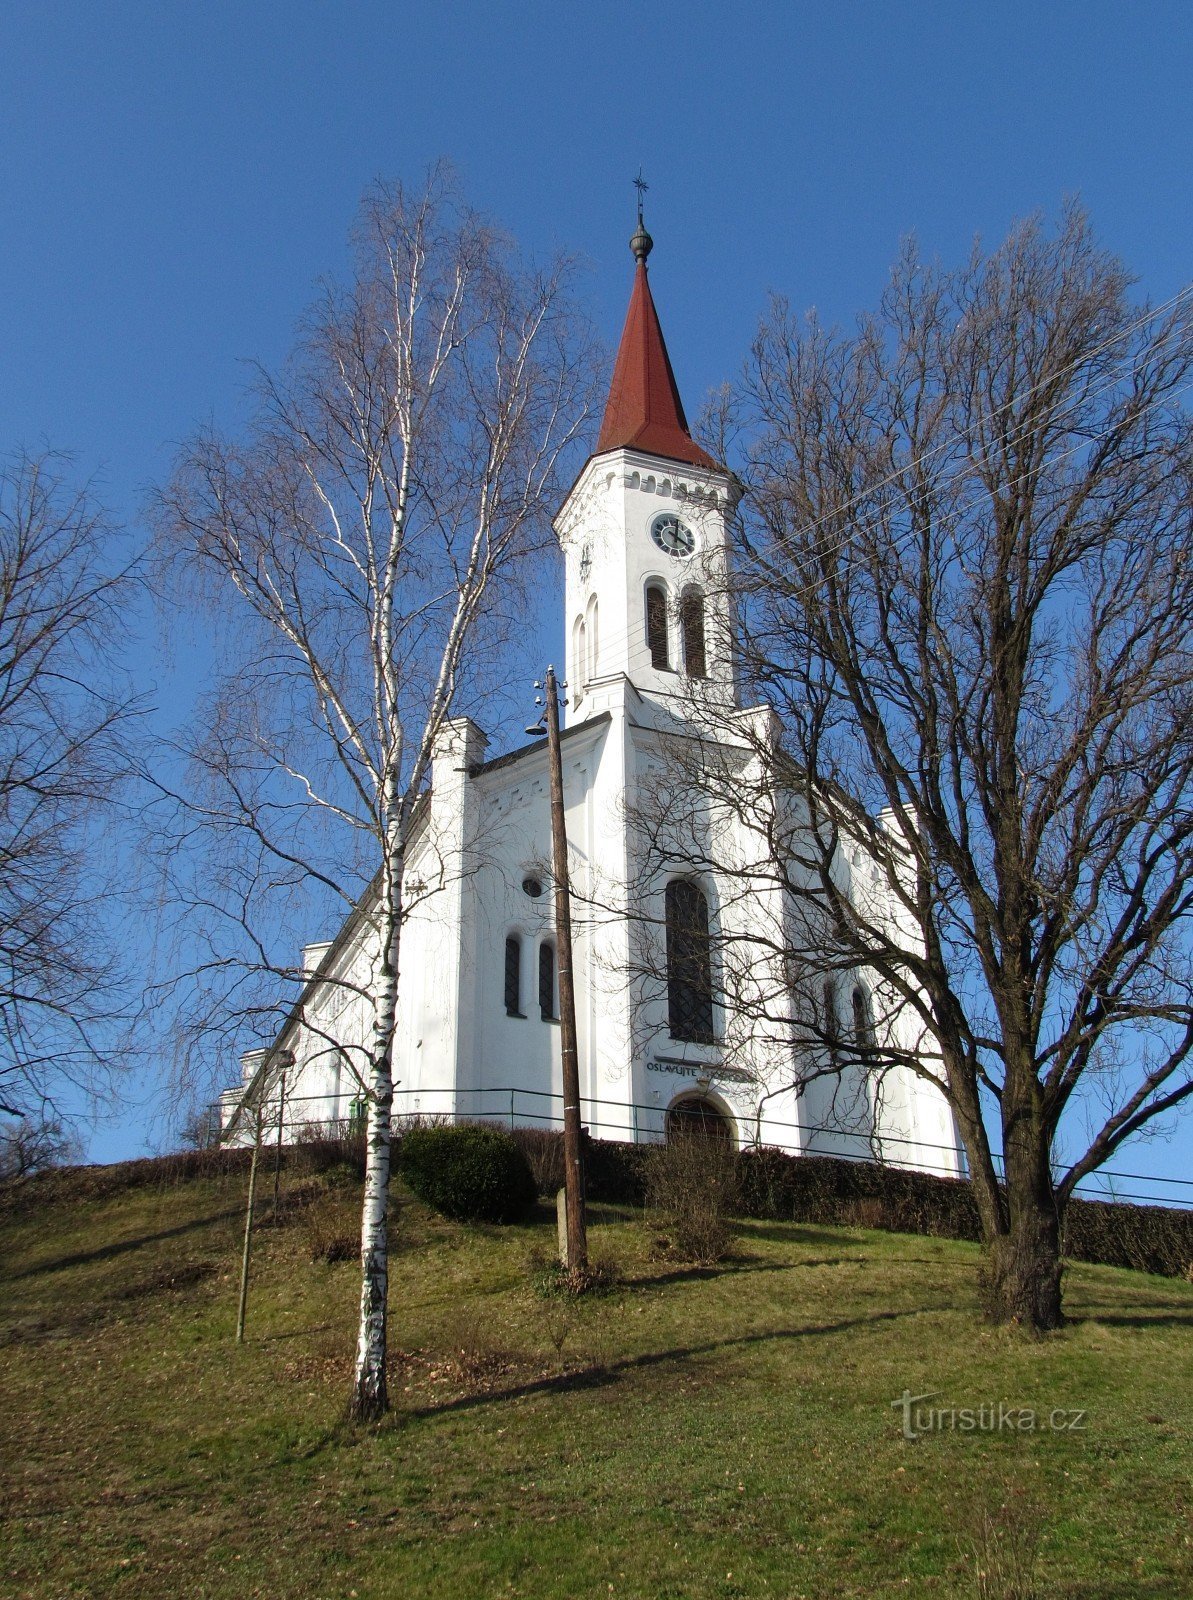 Zádveřice-Raková - nhà thờ Tin Lành